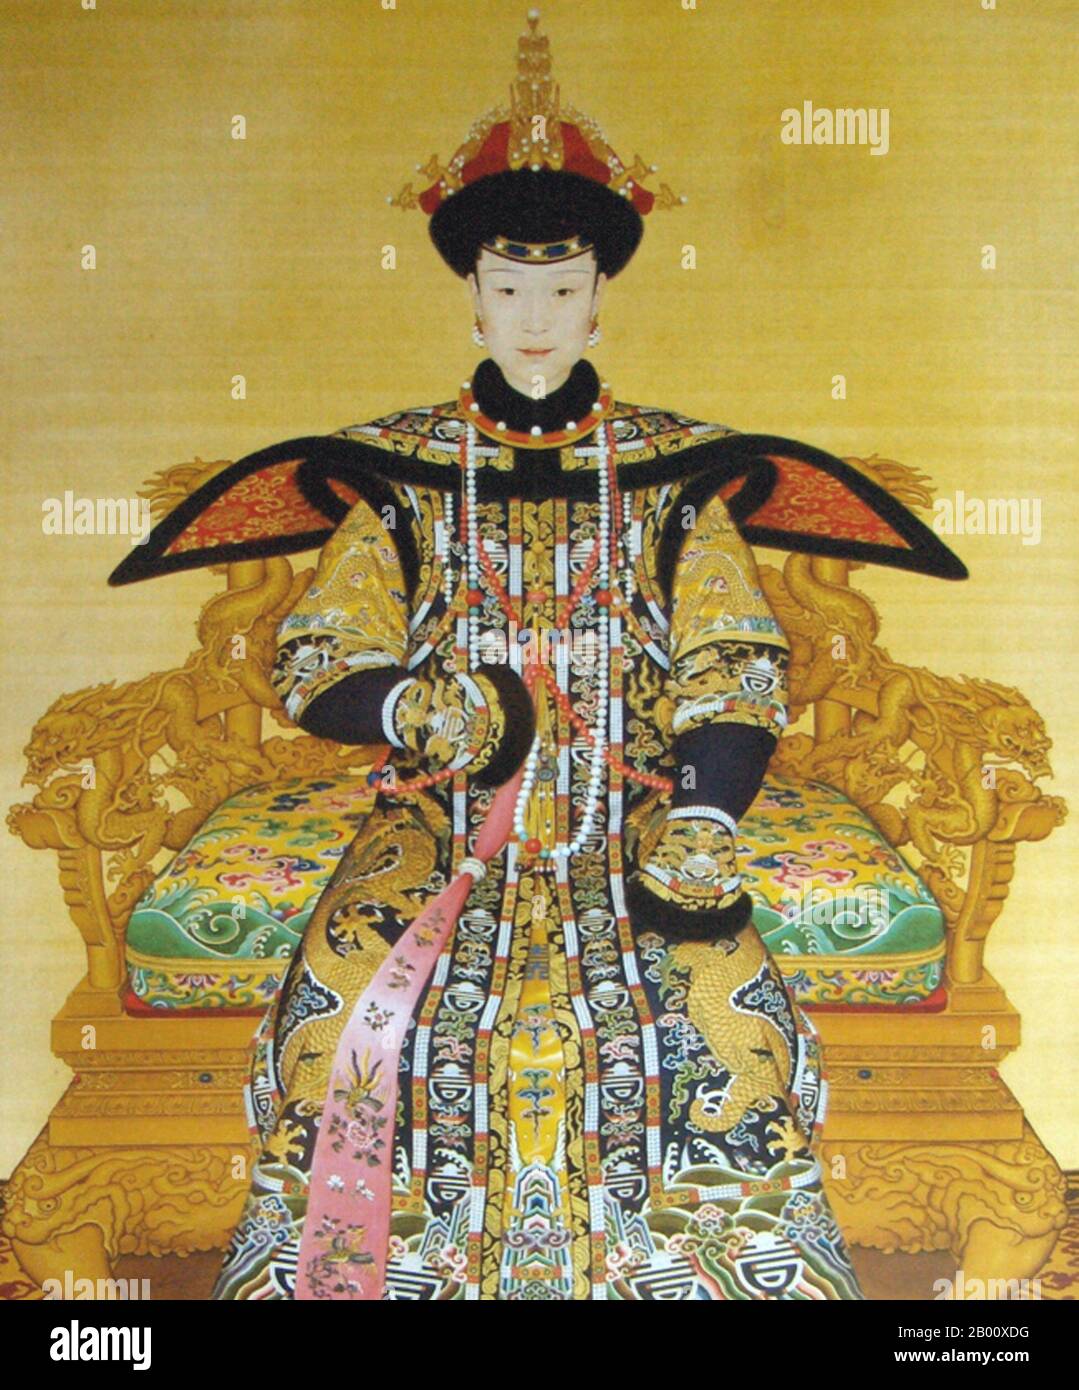 Cina: Imperatrice Xiao Xian Chun (Fuca). Pittura a mano di Giuseppe Castiglione (1688-1766), 1736. Imperatrice Xiao Xian Chun, nota anche come imperatrice Xiao Xian (28 marzo 1712 – 8 aprile 1748). Xiao Xian Chun era una figlia di li Rongbao e la sorella maggiore di fu Heng del clan Manchu Fuca. Fu la prima imperatrice Consort dell'Imperatore Qianlong di Cina (1711 - 1799). La Signora Fuca sposò il Principe Hong li (il futuro Imperatore Qianlong) nel quinto anno di regno dell'Imperatore Yong Zheng nel 1727 e fu resa Imperatrice nel 1736 con il titolo di Imperatrice Xiao Xian. Foto Stock